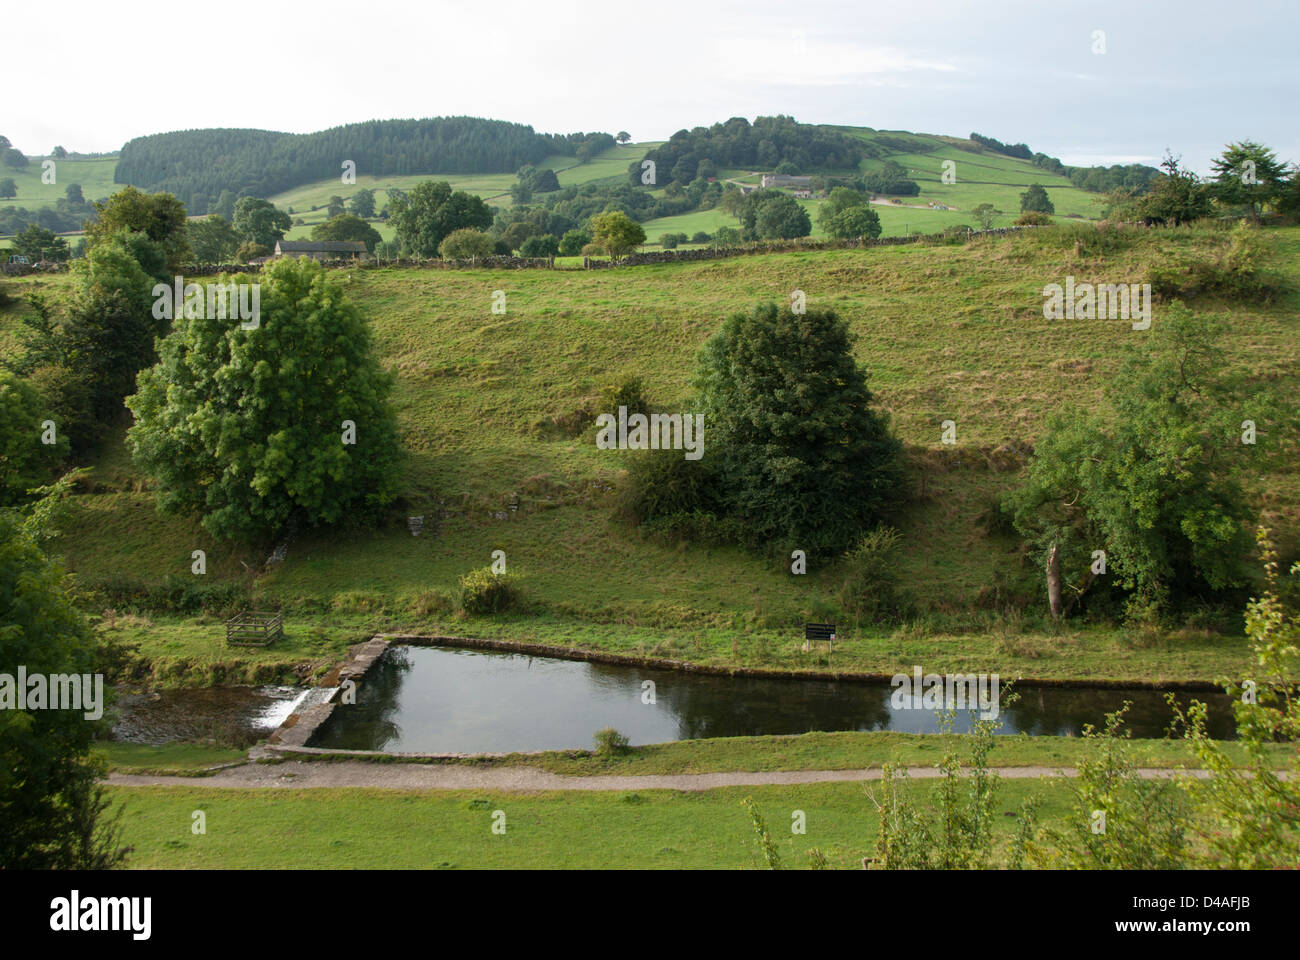 Landschaft mit dem Fluss in der Nähe von lathkill Youlgreave Derbyshire mit einem Damm, England Großbritannien Stockfoto